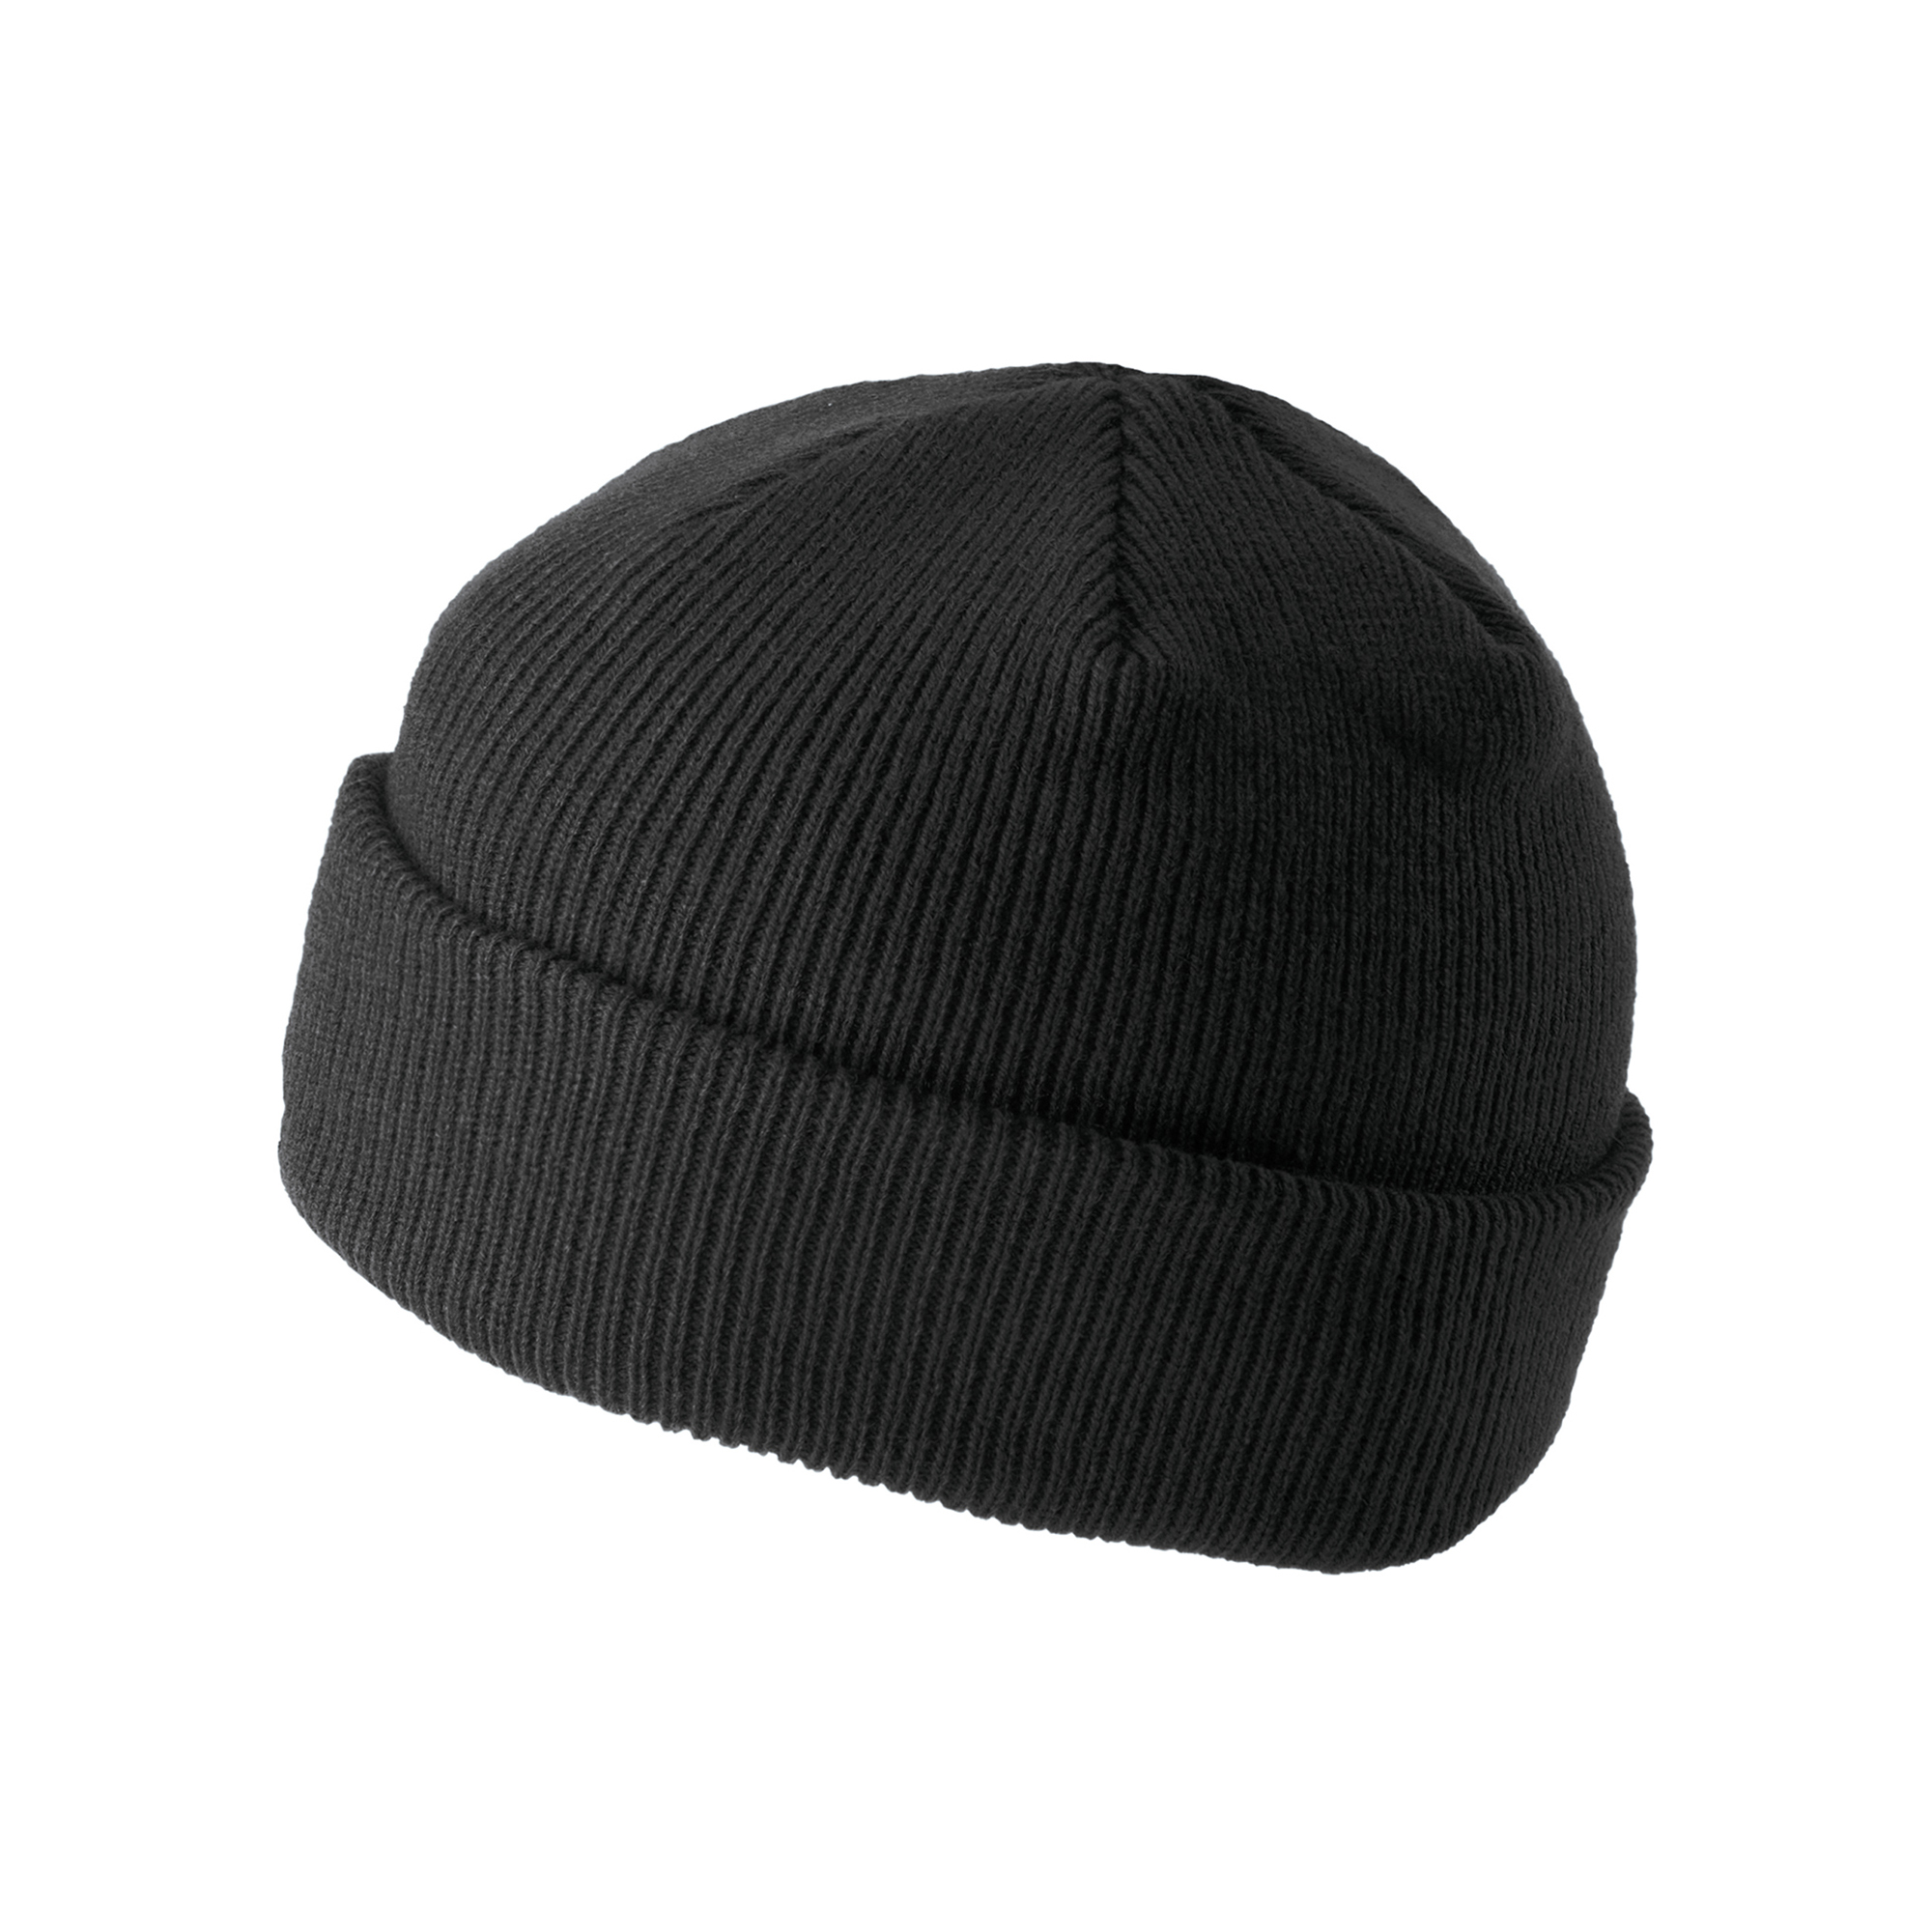 Beanie Reversible Merino Wool (Black) шапка Stetson